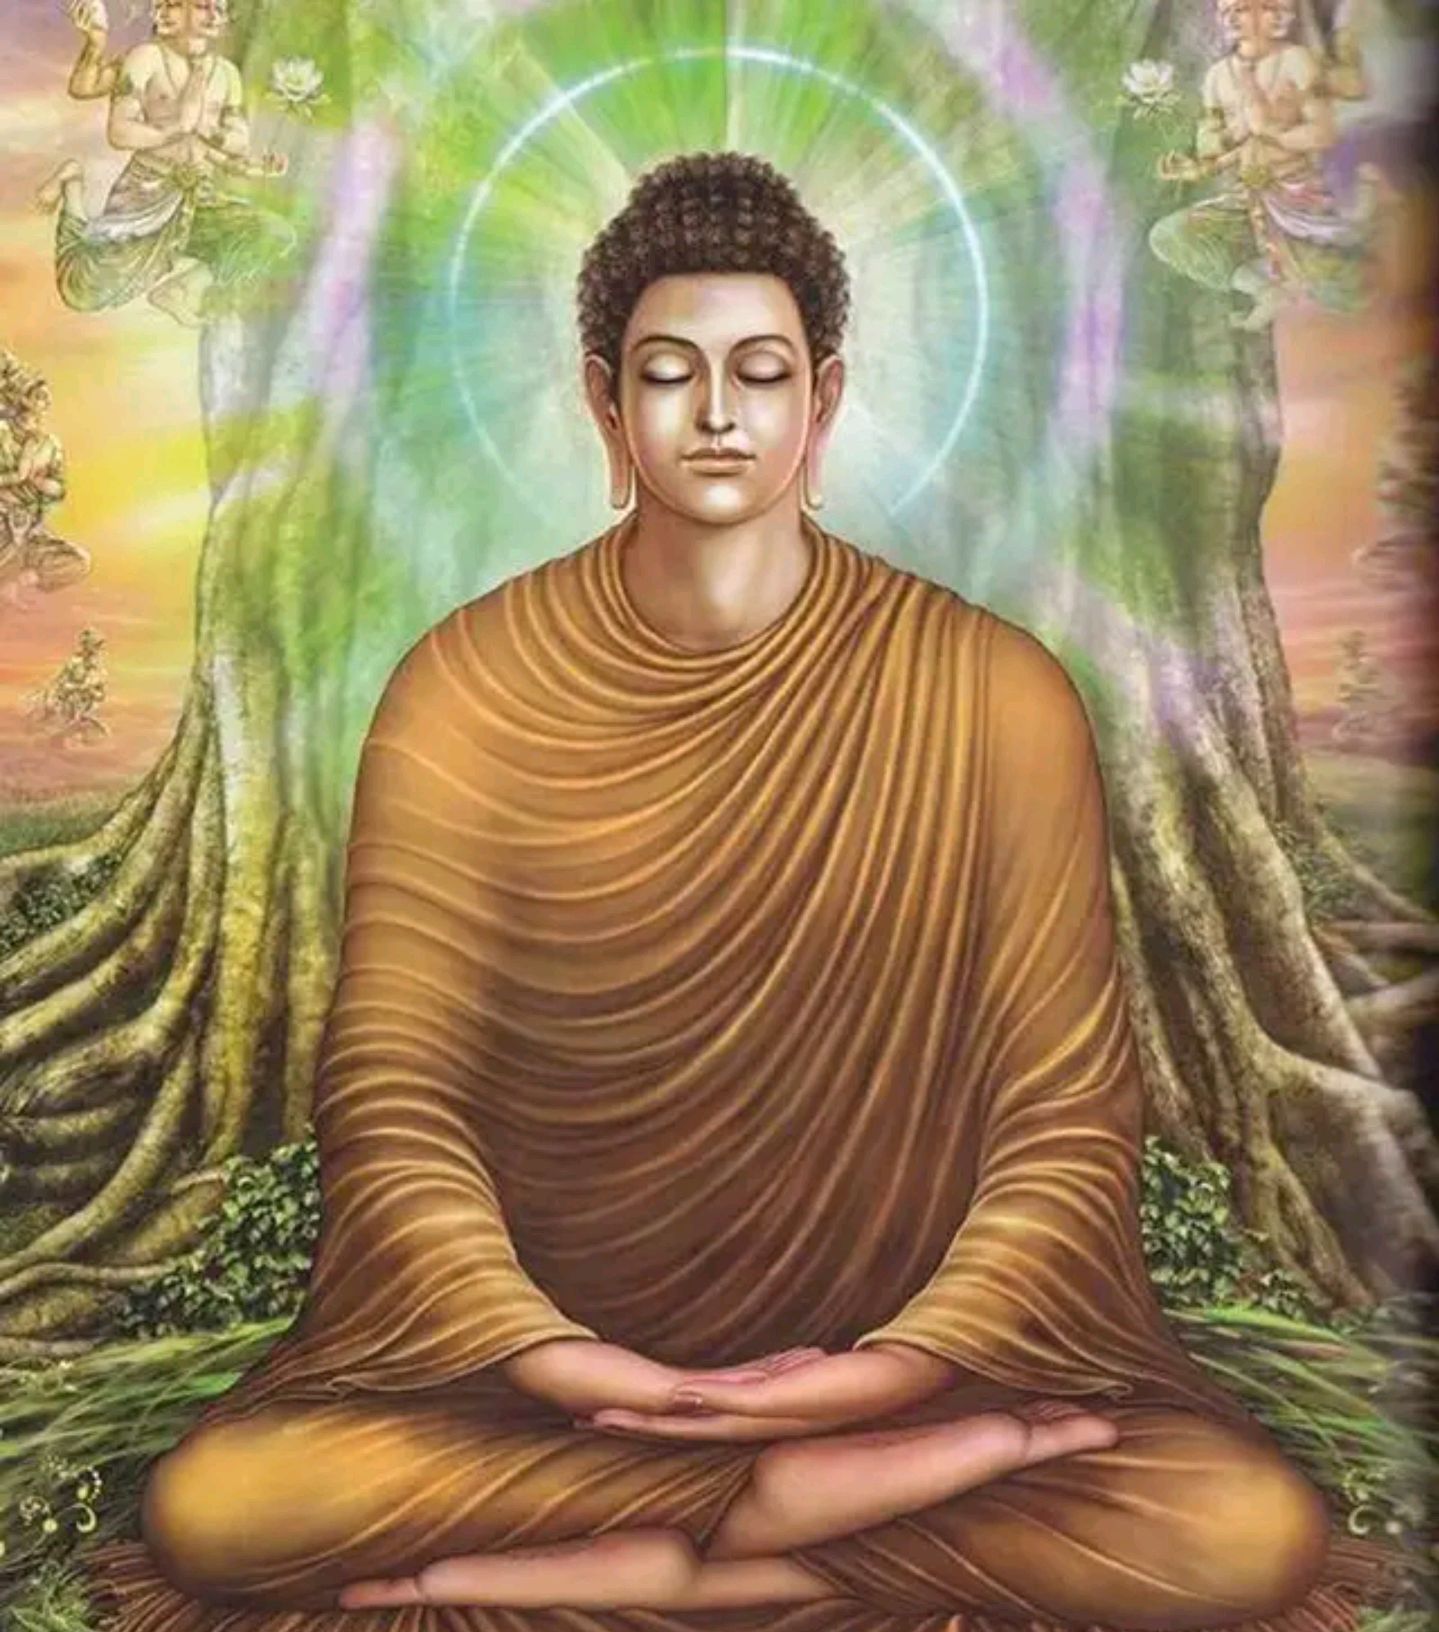 农历二月十五,是释迦牟尼涅槃日,他和如来佛祖是同一个人吗